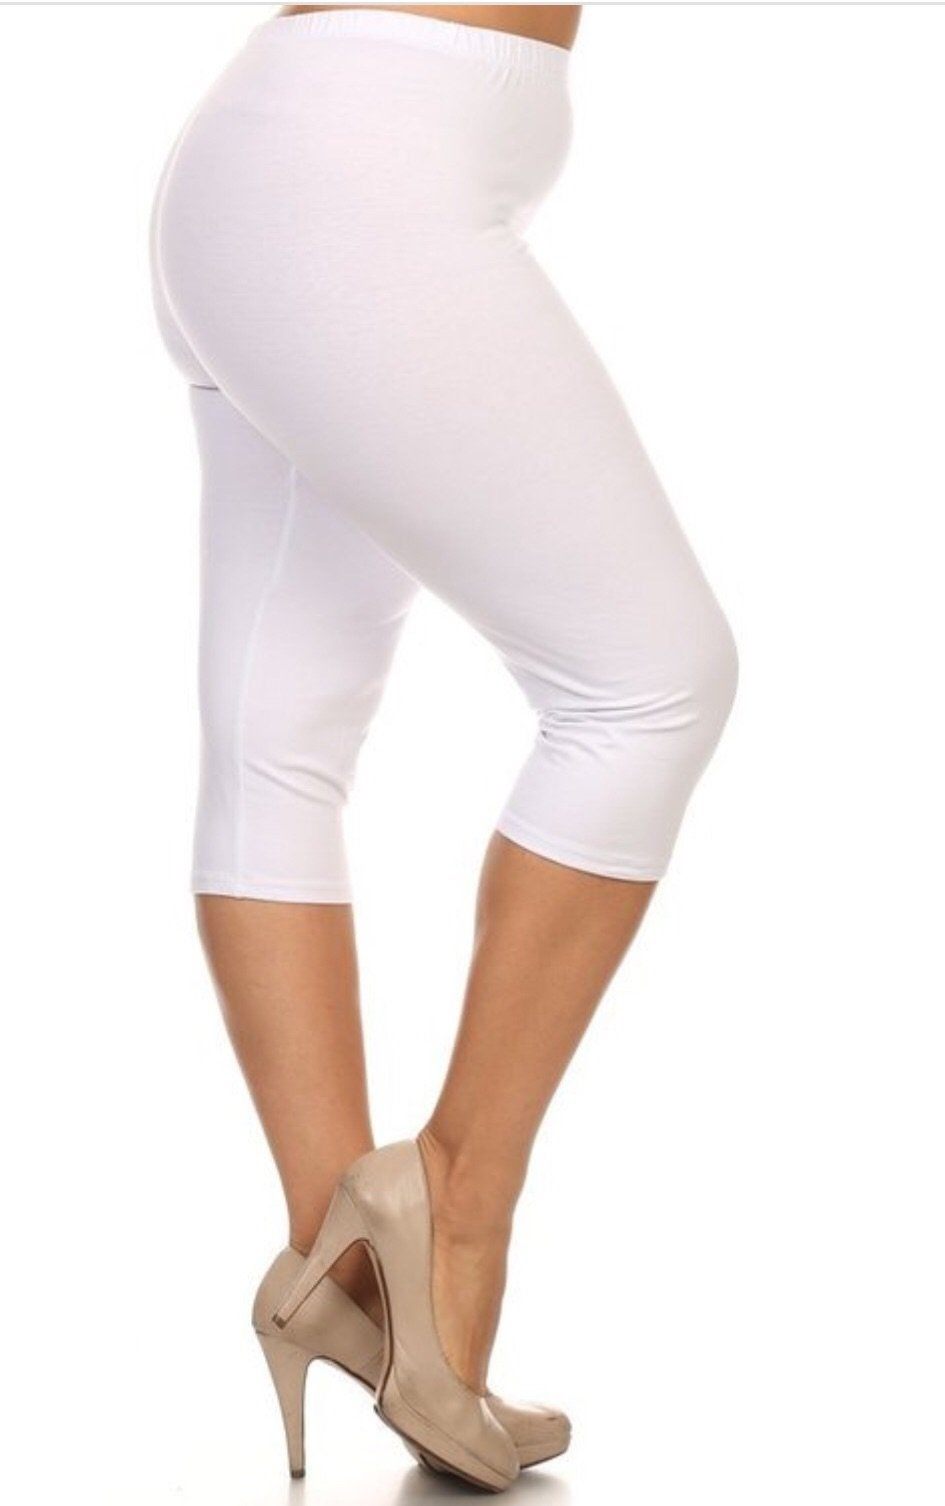 Buy online White Solid Legging from Capris & Leggings for Women by Jvnine  for ₹429 at 28% off